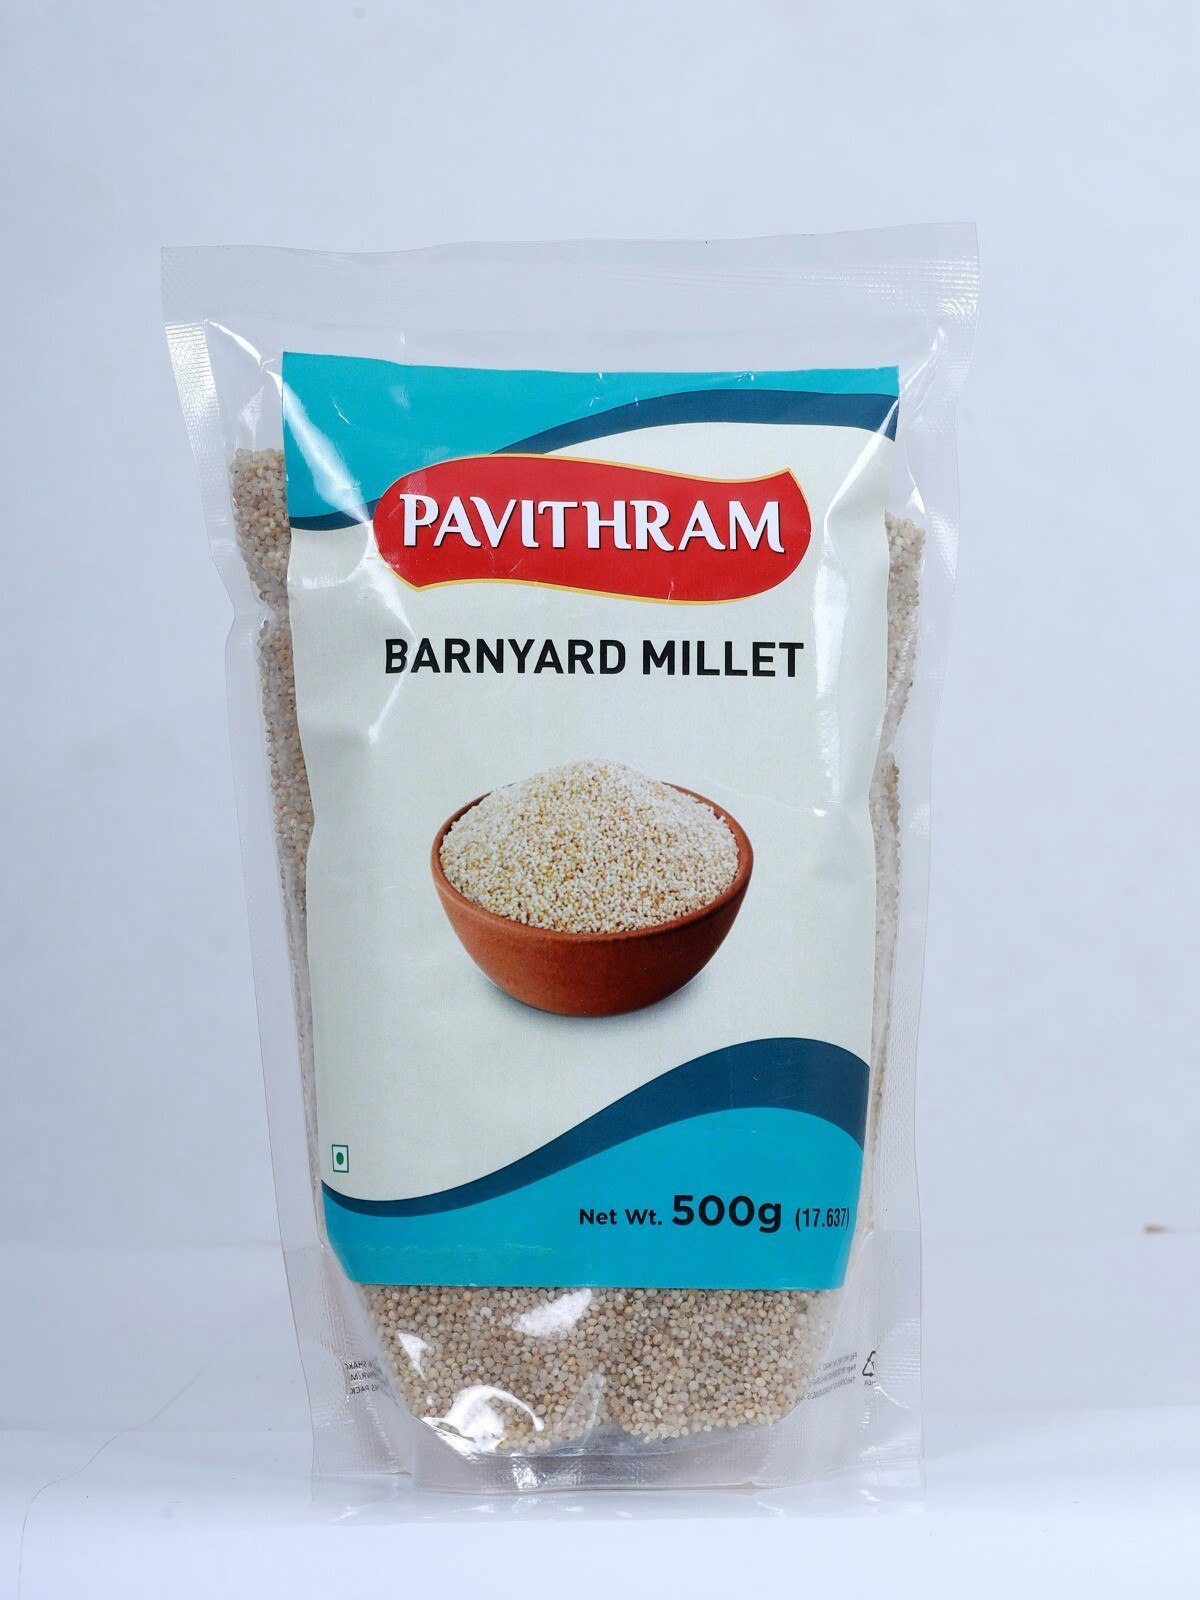 Barnyard Millet (Pavithram)  500g